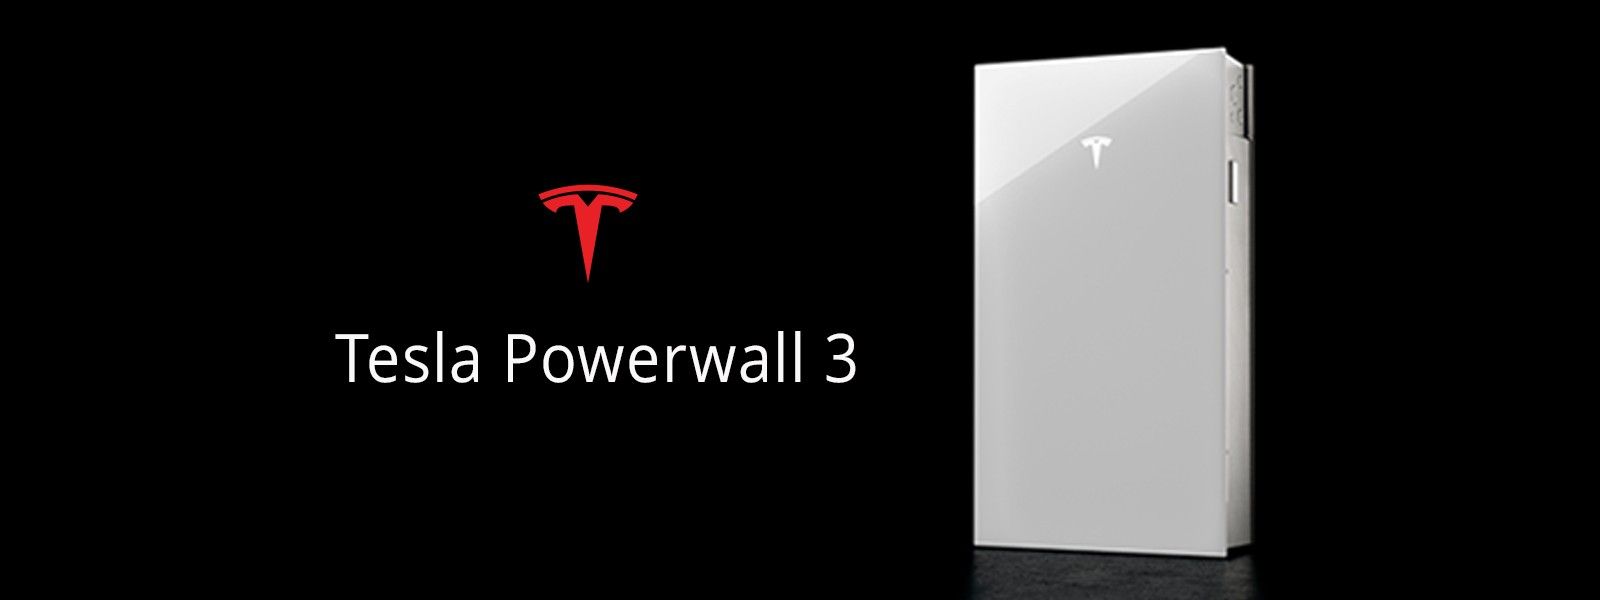 Understanding the Tesla Powerwall 3